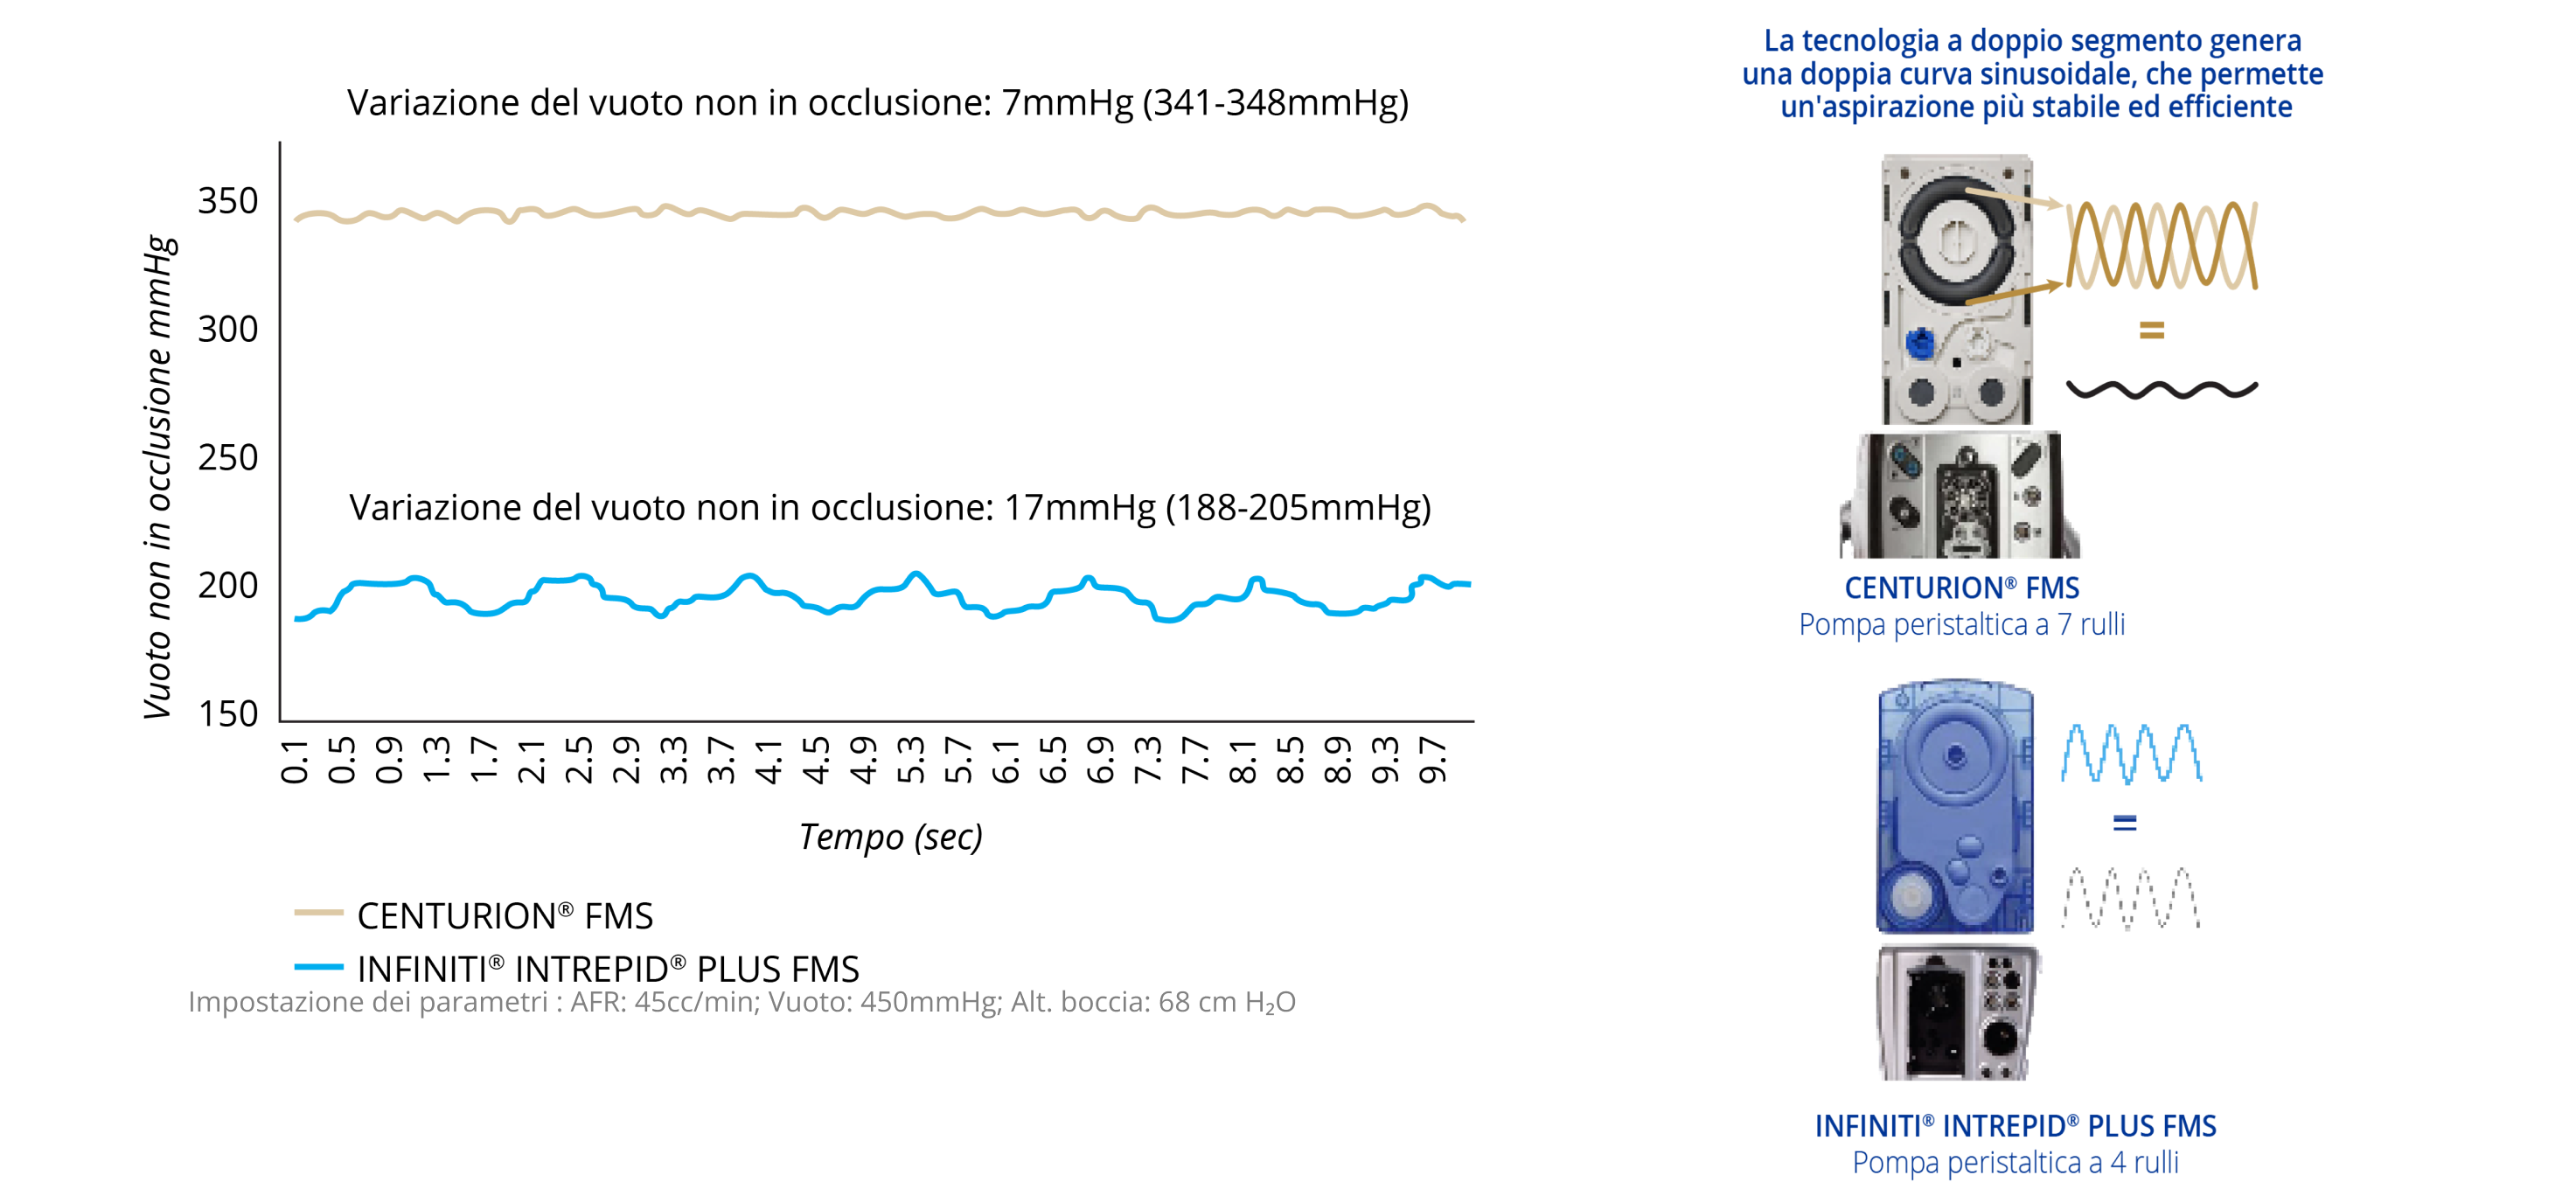 Un grafico a linee che mostra la variazione del vuoto di non occlusione di CENTURION FMS e INFINITI INTREPID PLUS FMS. CENTURION FMS è più stabile nel tempo rispetto a INFINITI FMS. Un'immagine di CENTURION FMS e INFINITI FMS. La tecnologia a doppio segmento di CENTURION FMS genera una doppia curva sinusoidale, consentendo un'aspirazione più efficiente e stabile rispetto a INFINITI FMS.